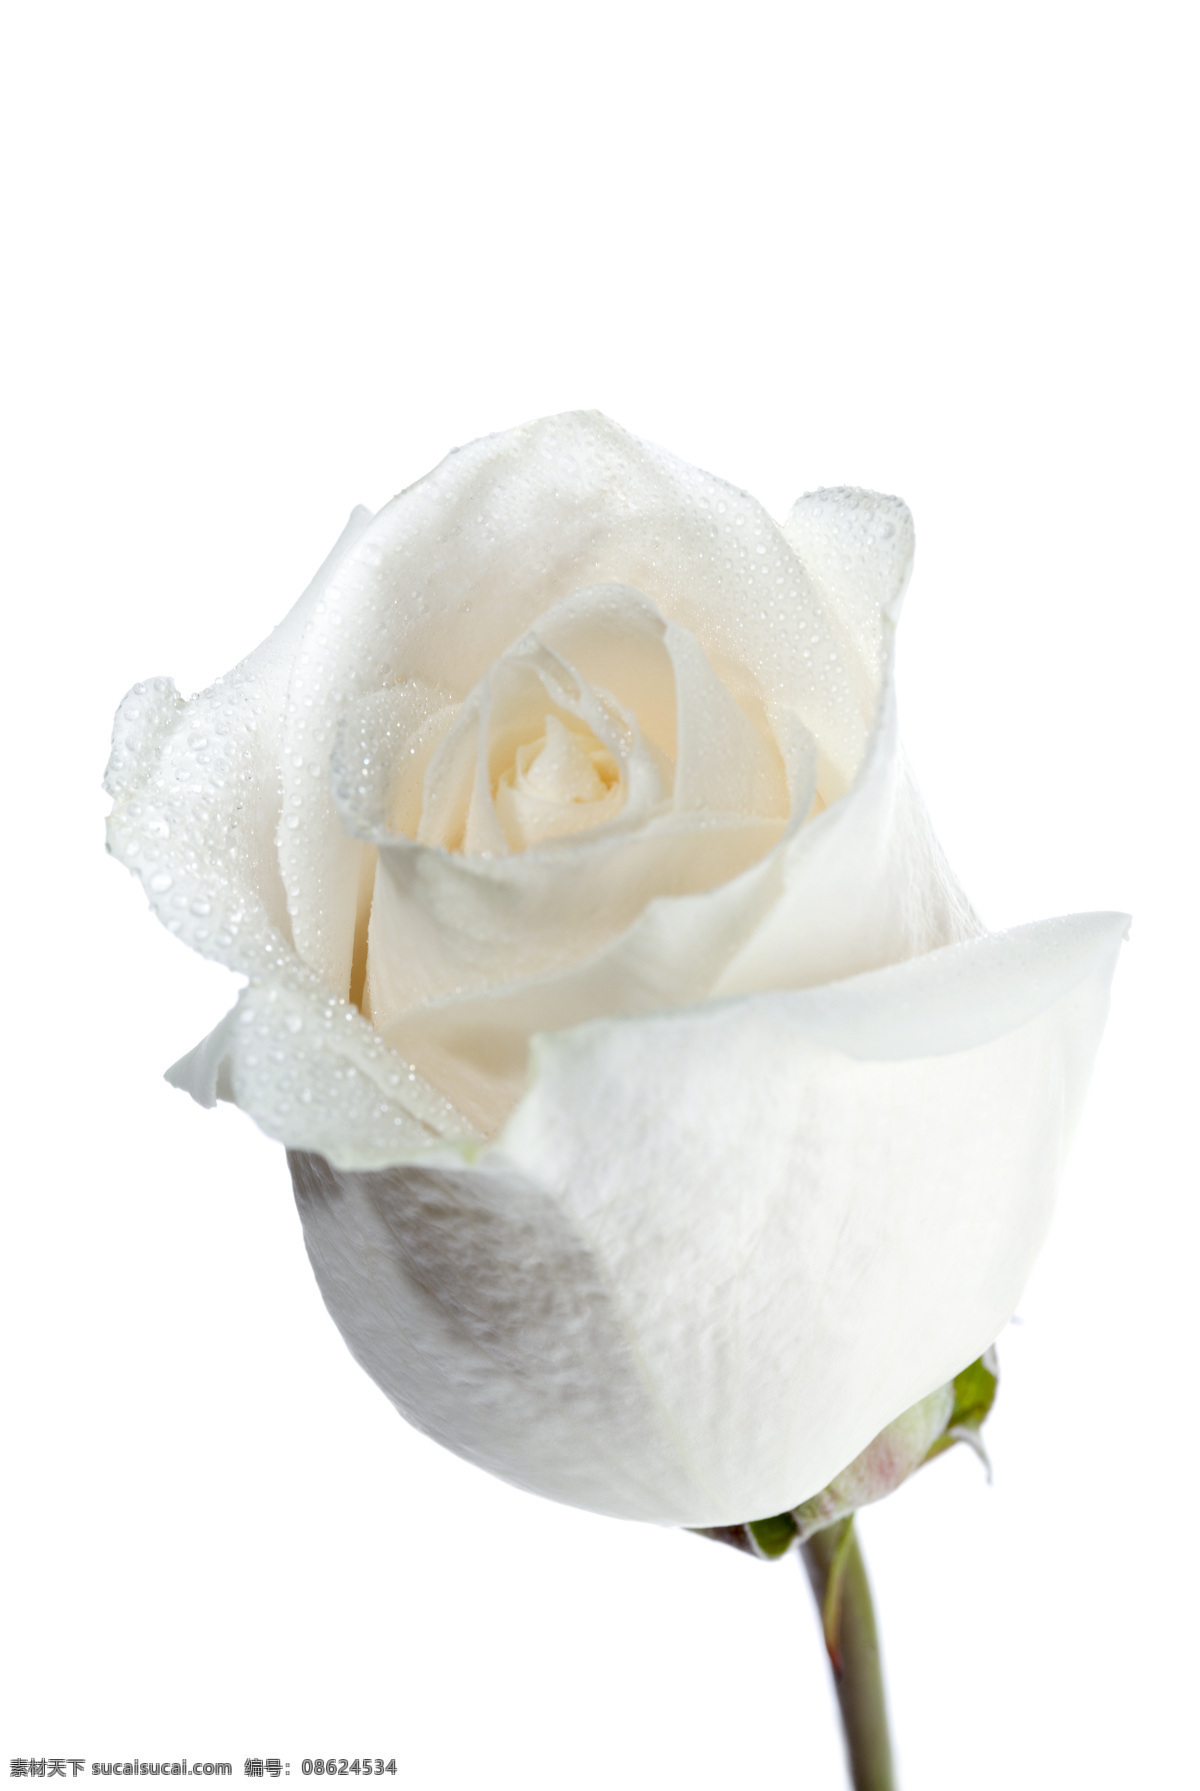 白玫瑰 玫瑰花 玫瑰 花卉 花瓣 叶子 鲜花 花草 生物世界